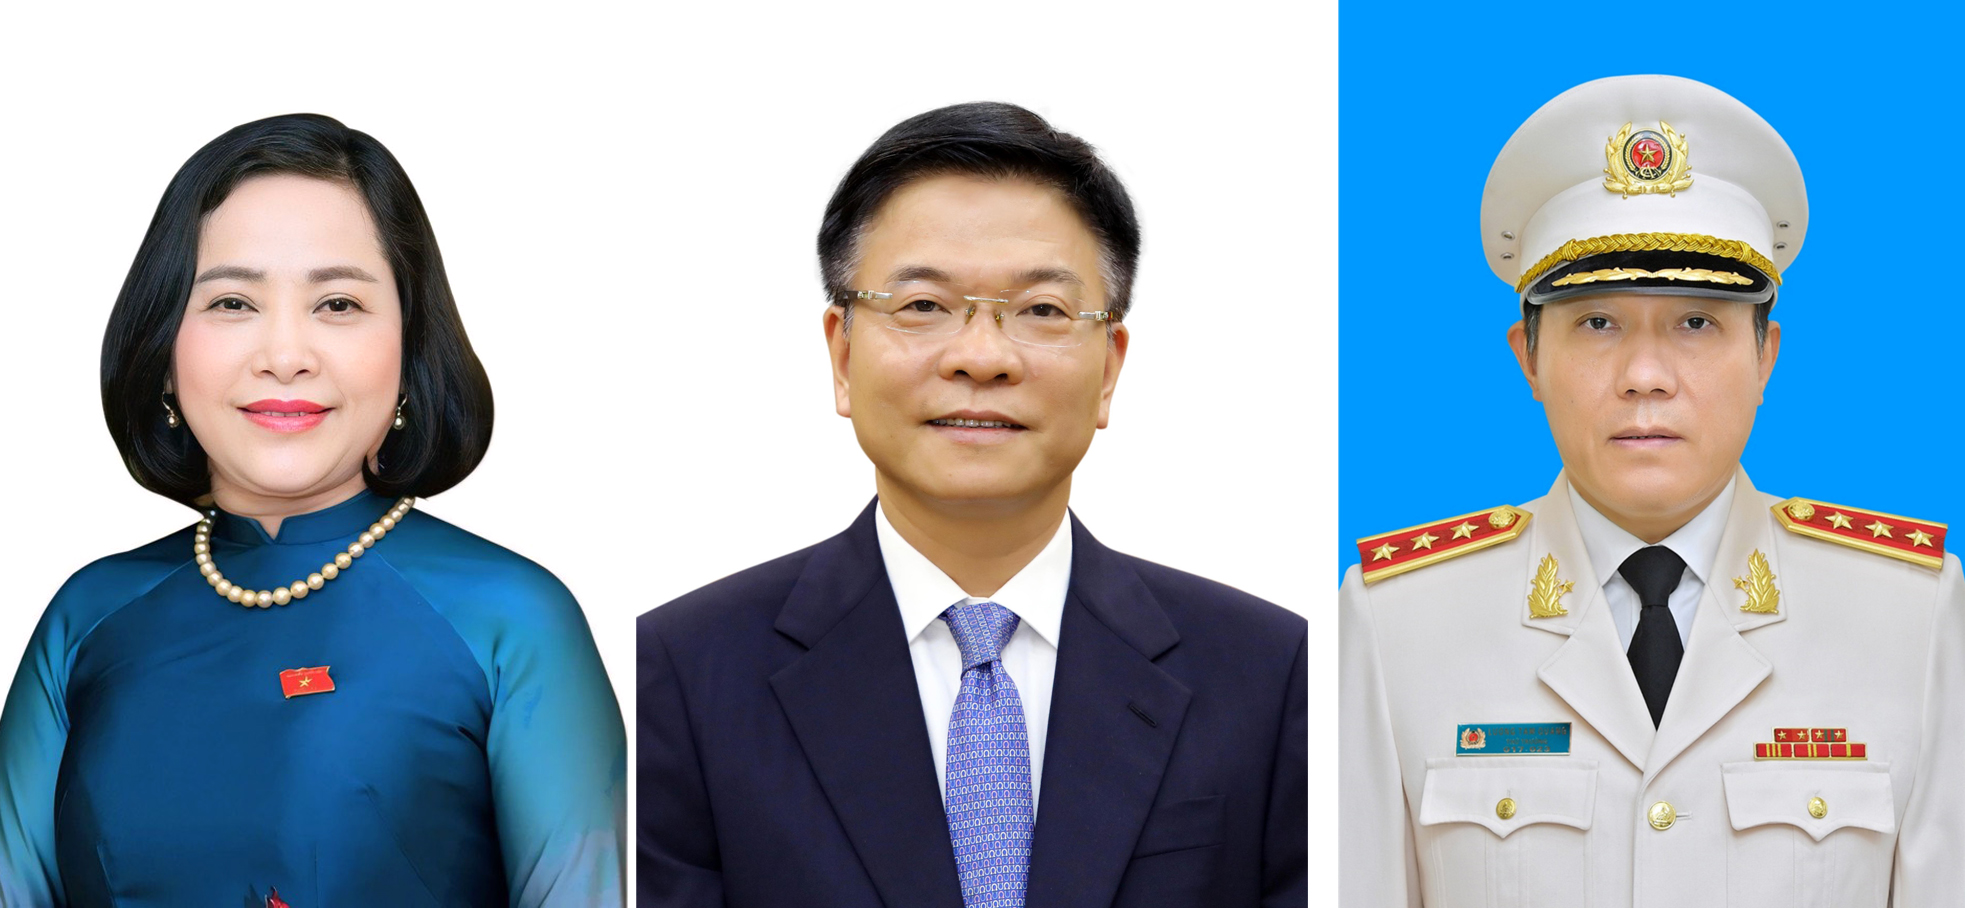 Từ trái qua phải: Phó Chủ tịch Quốc hội Nguyễn Thị Thanh, Phó Thủ tướng Chính phủ Lê Thành Long, Bộ trưởng Bộ Công an Lương Tam Quang.